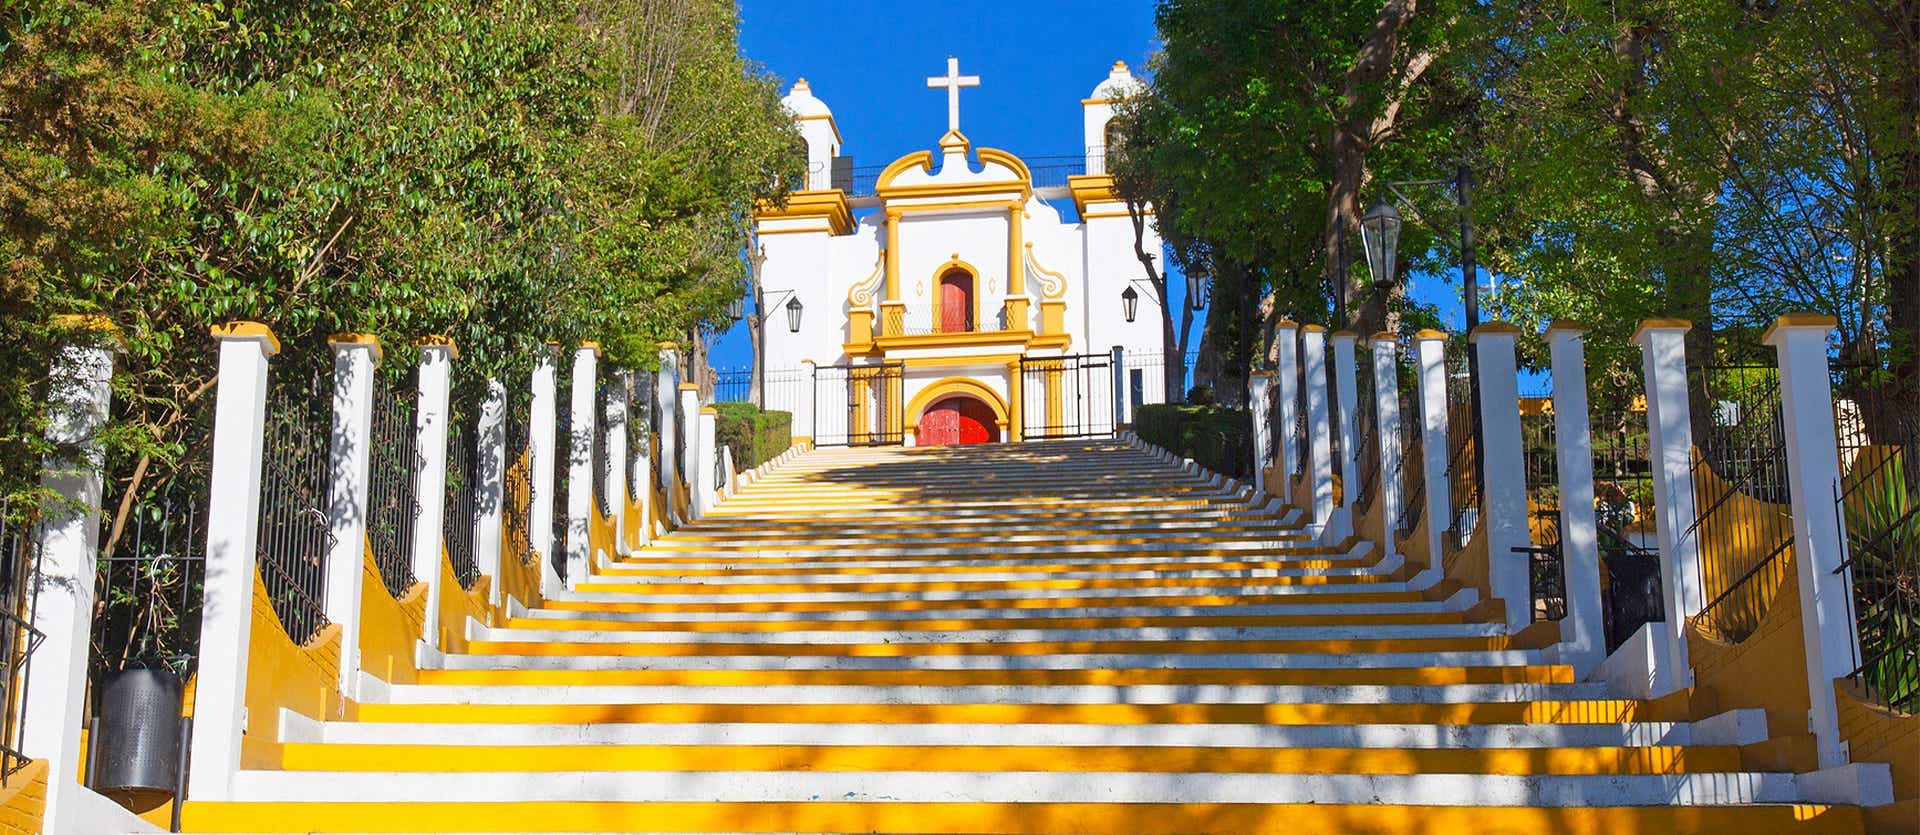 Guadalupe Church <span class="iconos separador"></span> San Cristobal de las Casas